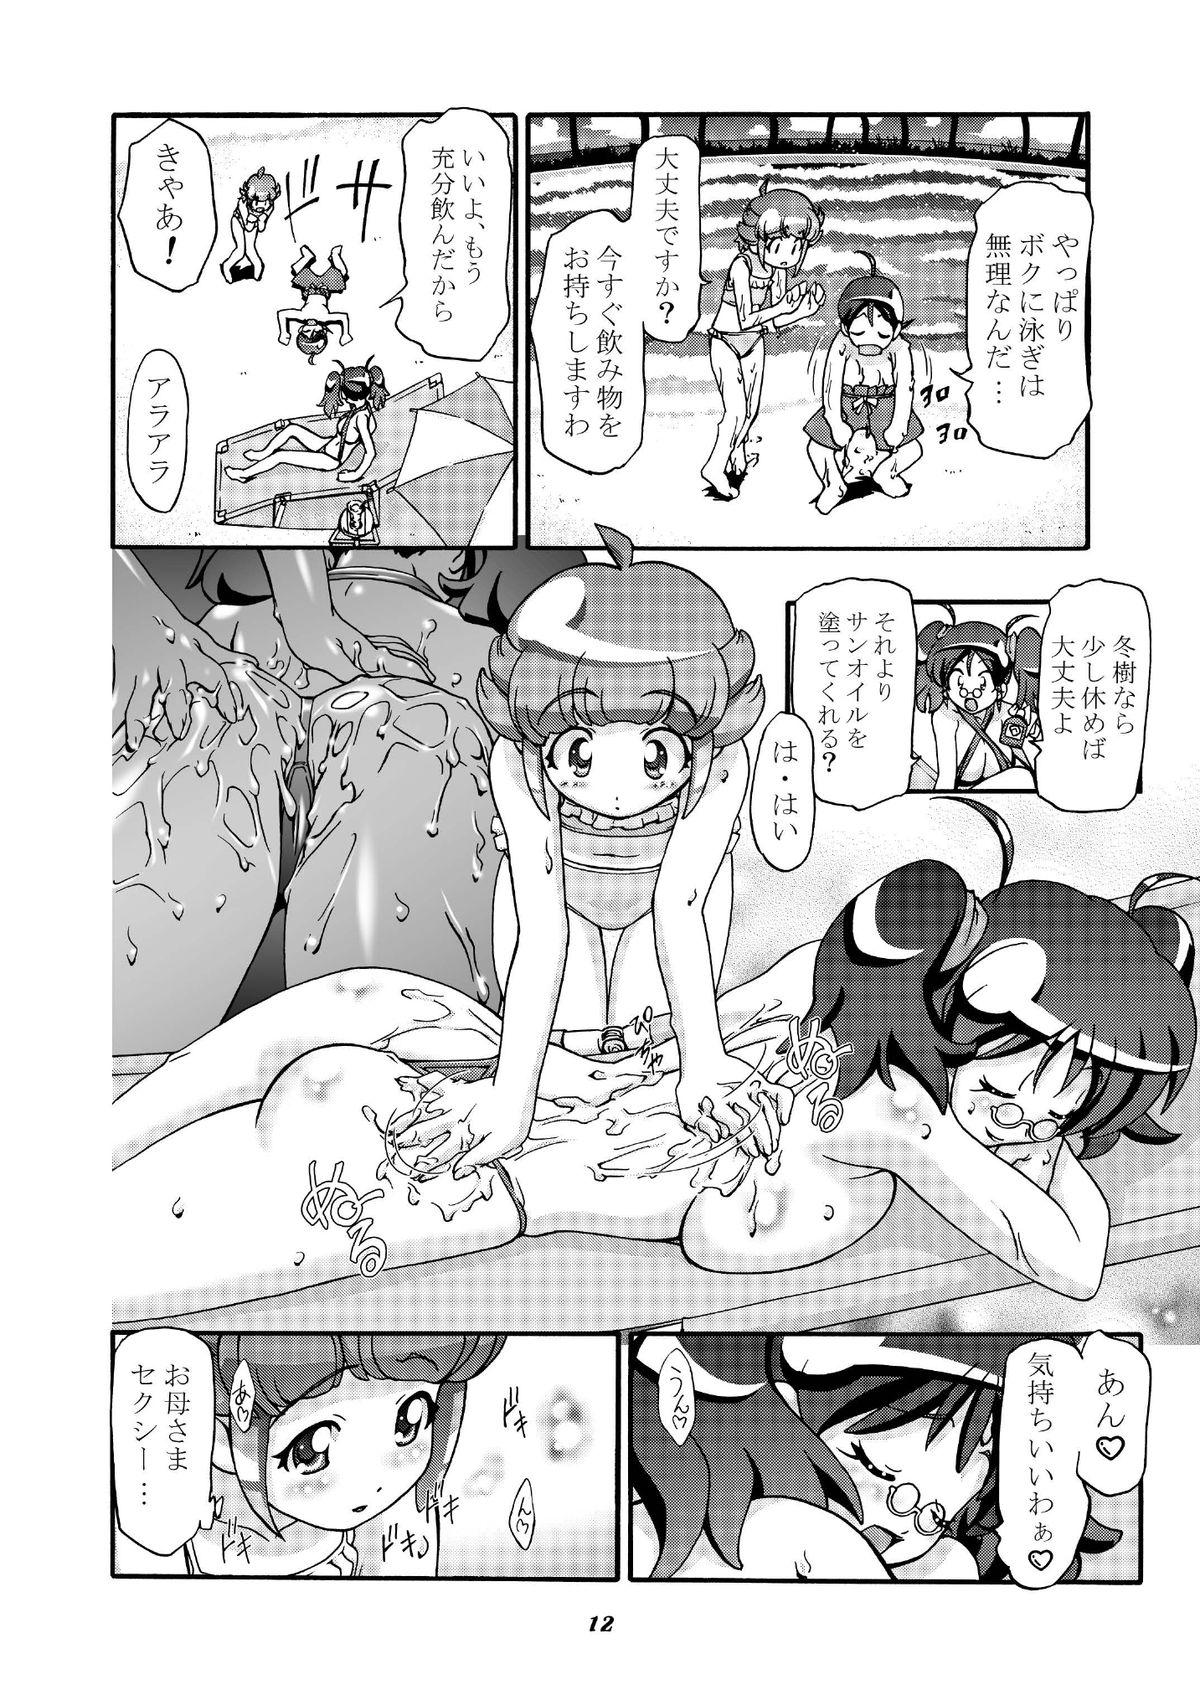 Grandmother Aki Momo - Autumn Peach - Keroro gunsou Couch - Page 11